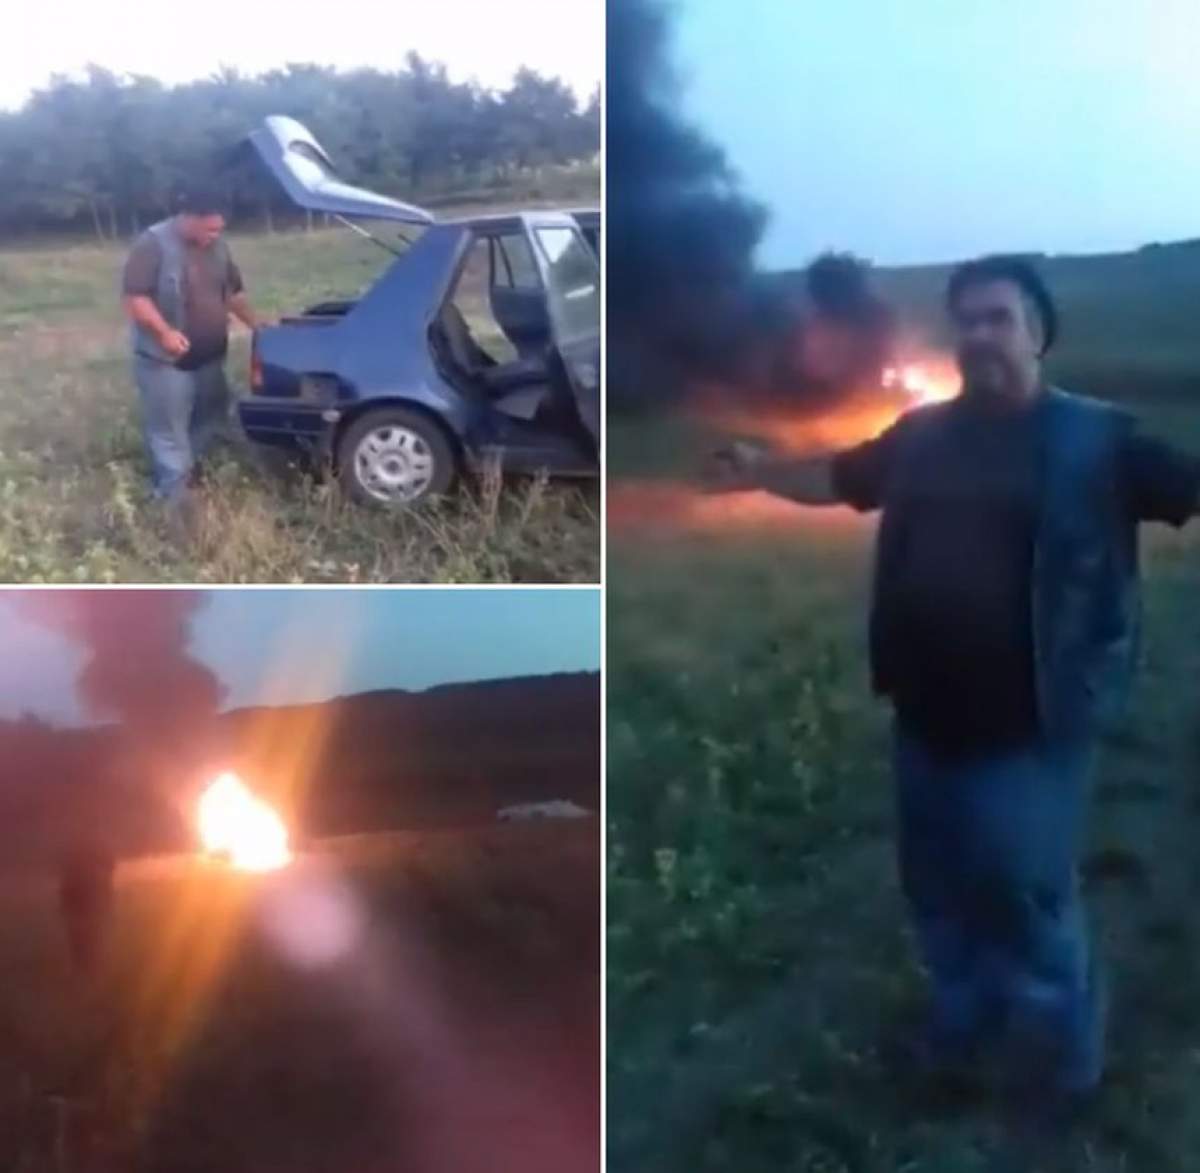 Gest extrem, pe internet! Un cioban din Cluj şi-a incendiat maşina, live, pe Facebook / VIDEO